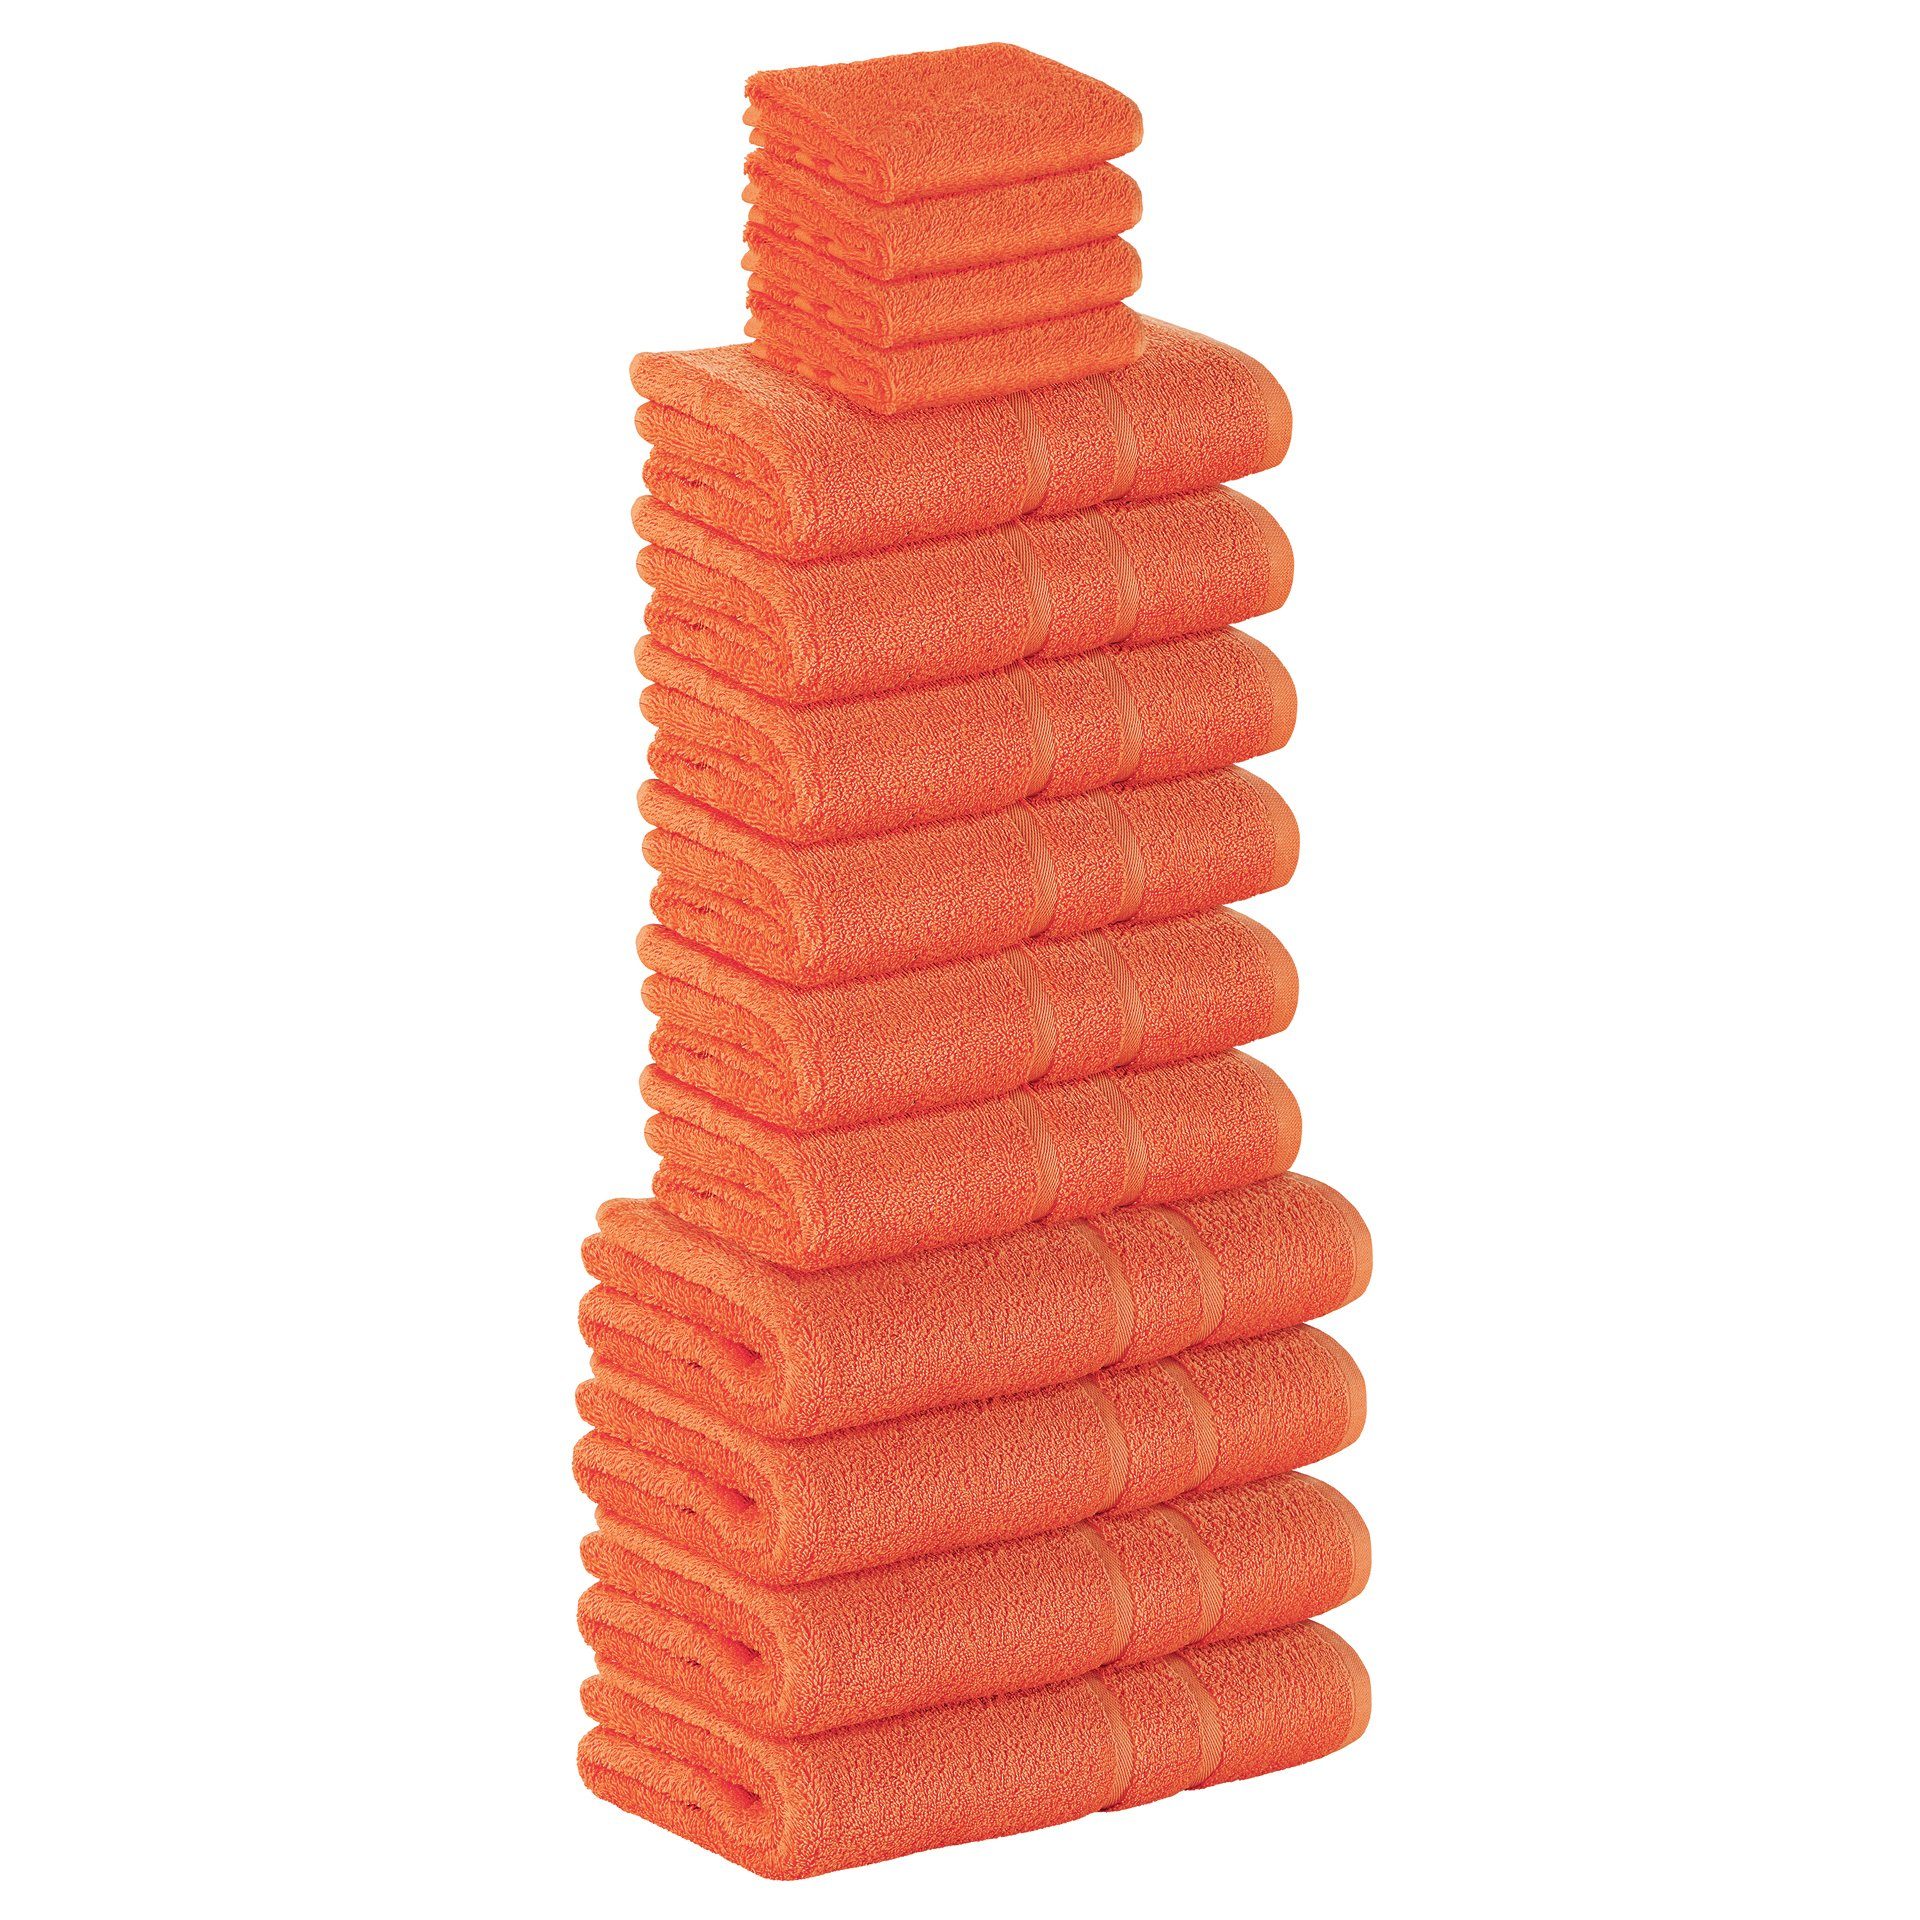 StickandShine Handtuch Set 4x Gästehandtuch 6x Handtücher 4x Duschtücher als SET in verschiedenen Farben (14 Teilig) 100% Baumwolle 500 GSM Frottee 14er Handtuch Pack, 100% Baumwolle 500 GSM Orange